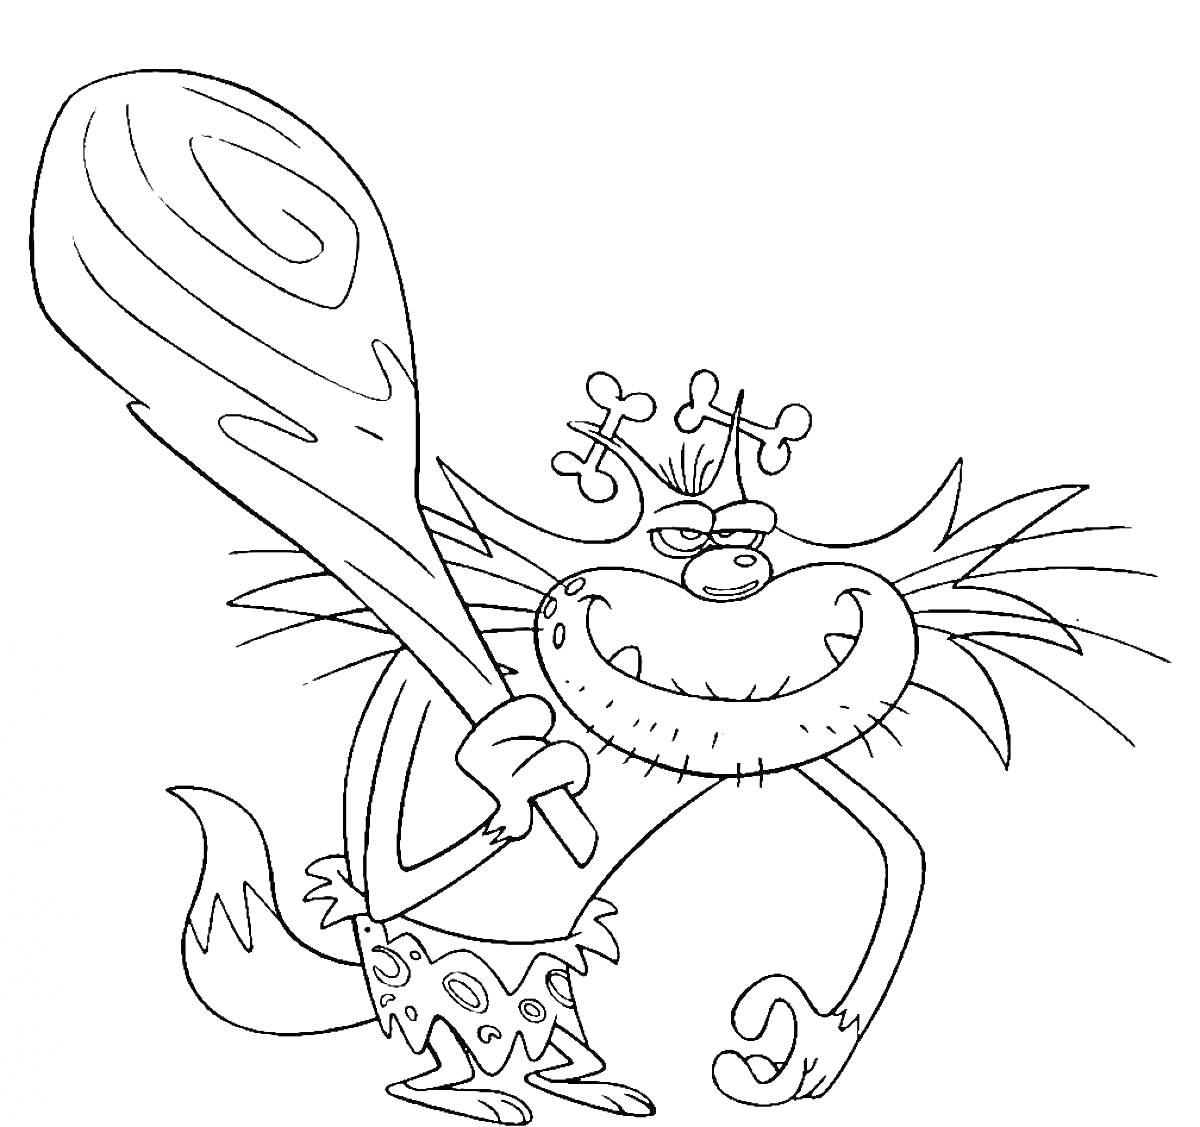 Раскраска Кот с большой дубинкой в стиле пещерного человека из мультфильма 